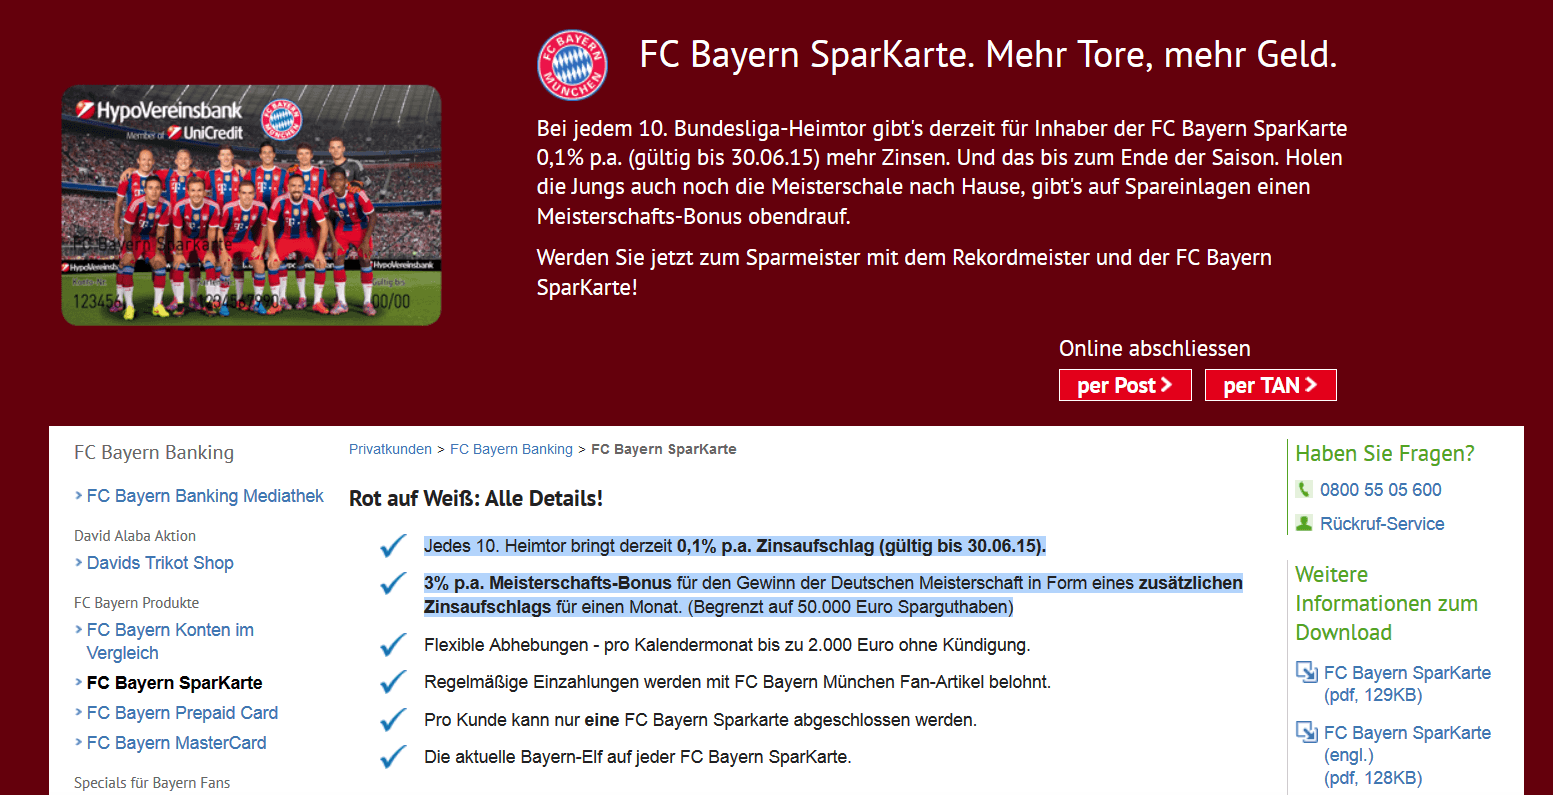 Die Vorteile der FC Bayern SparKarte